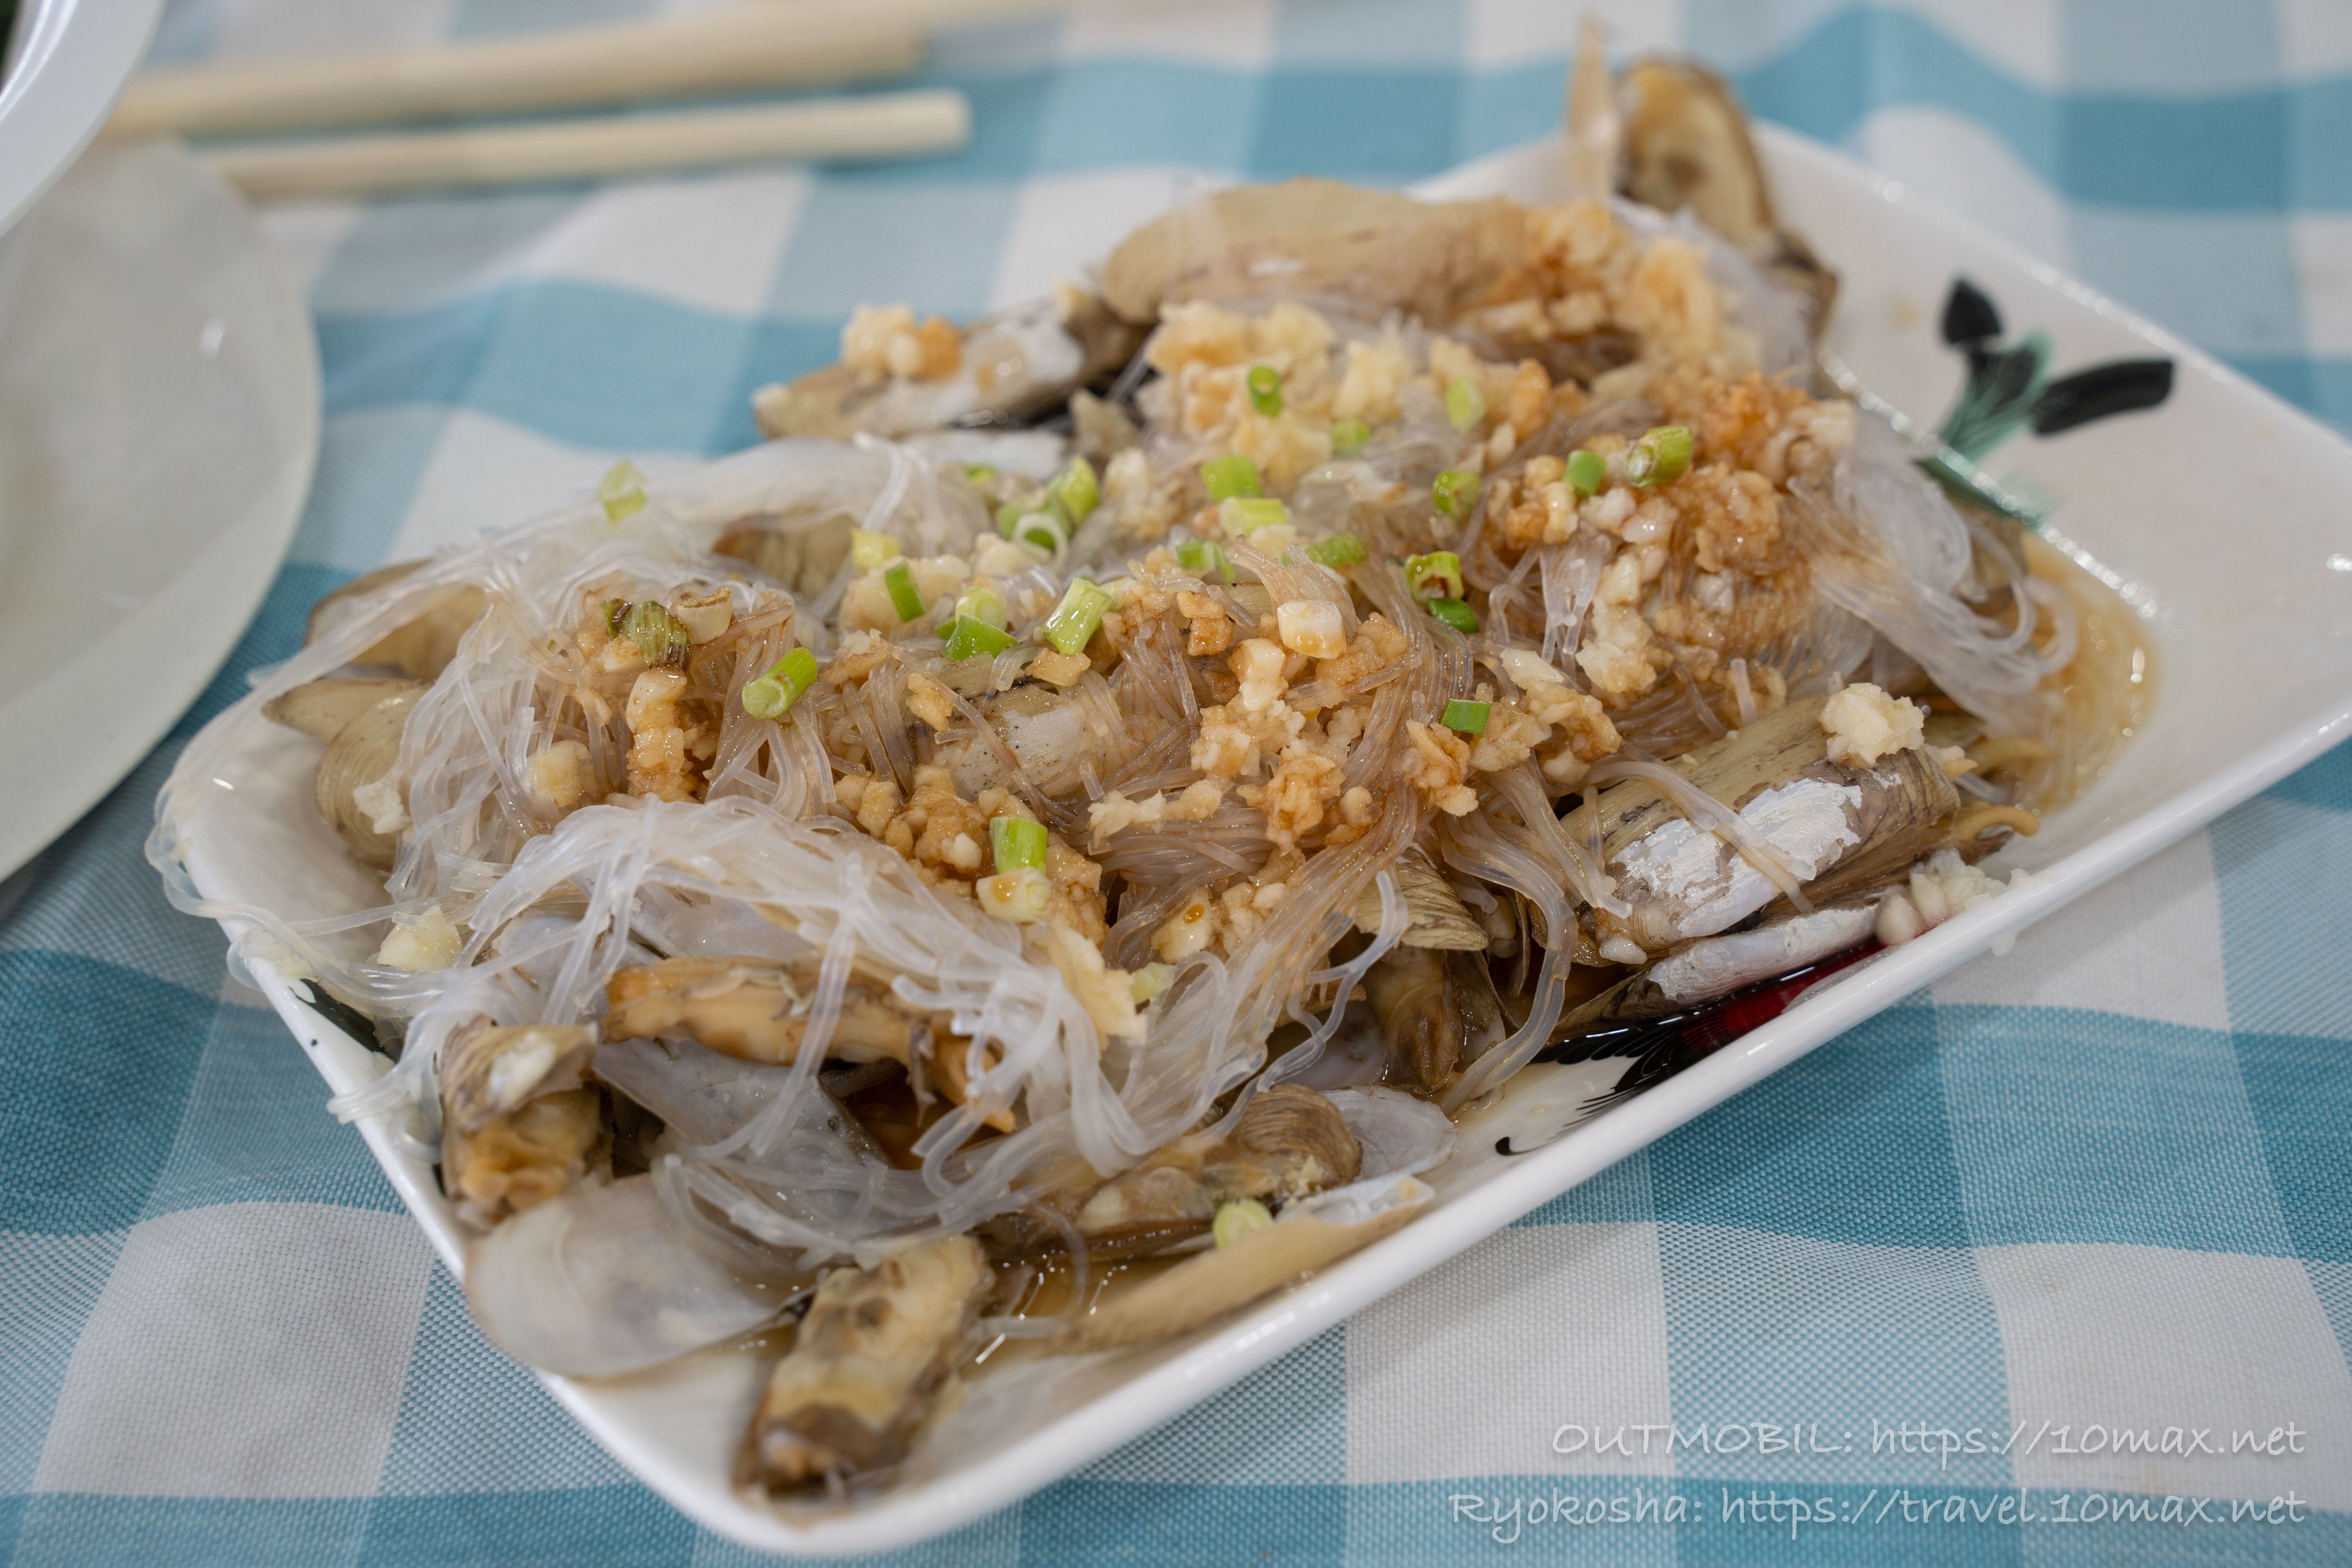 マテ貝炒め, 興楽菜館, 長州島の海鮮中華レストラン, 香港